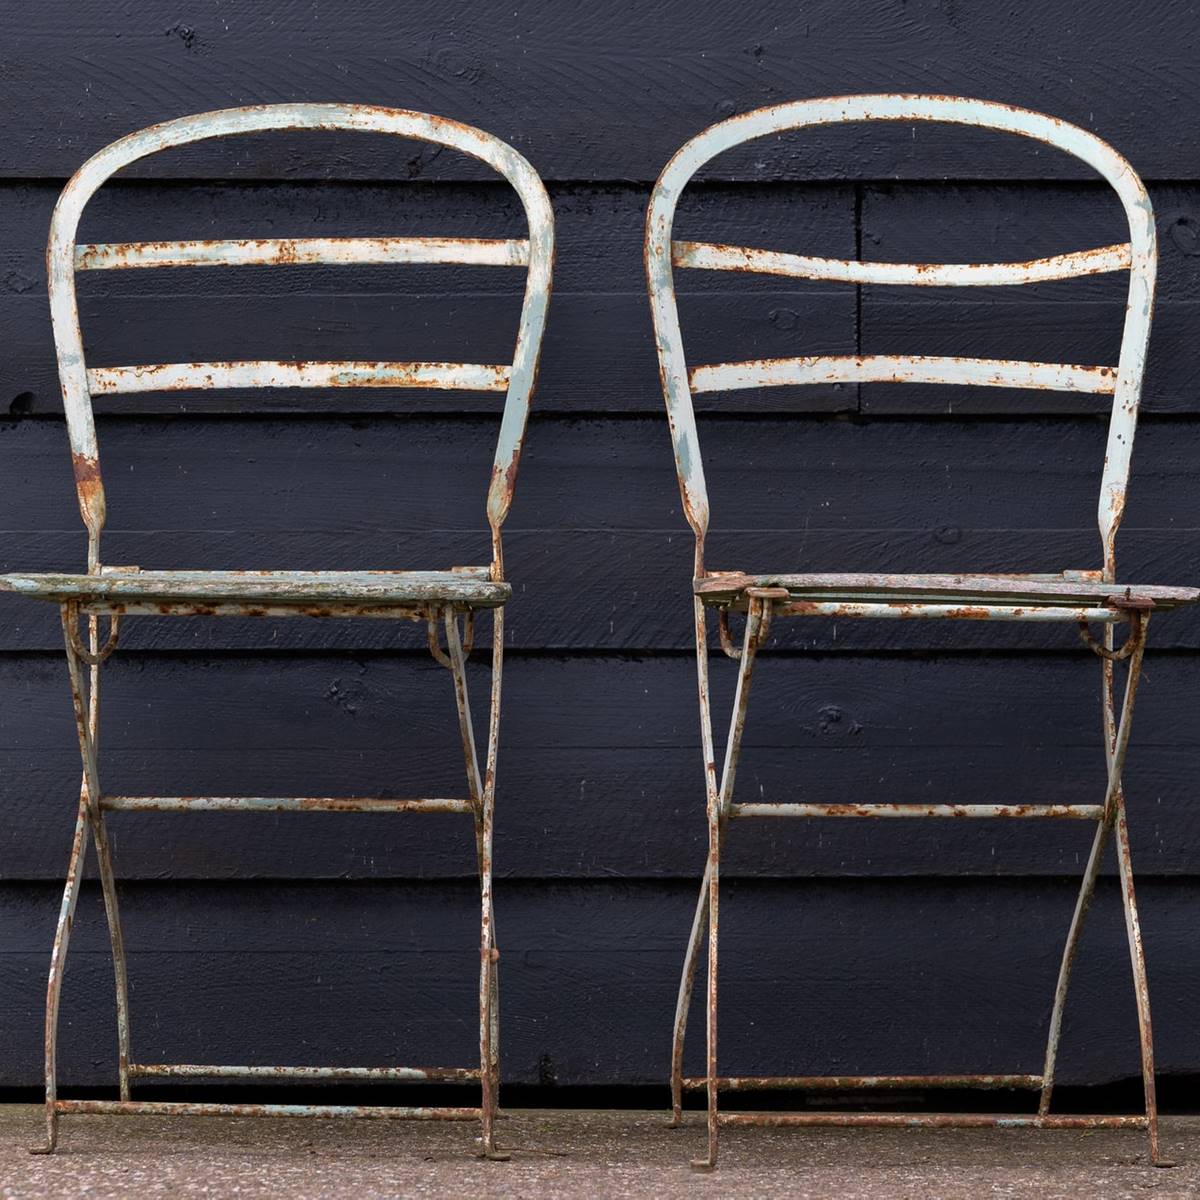 Dos sillas de metal de jardín oxidadas